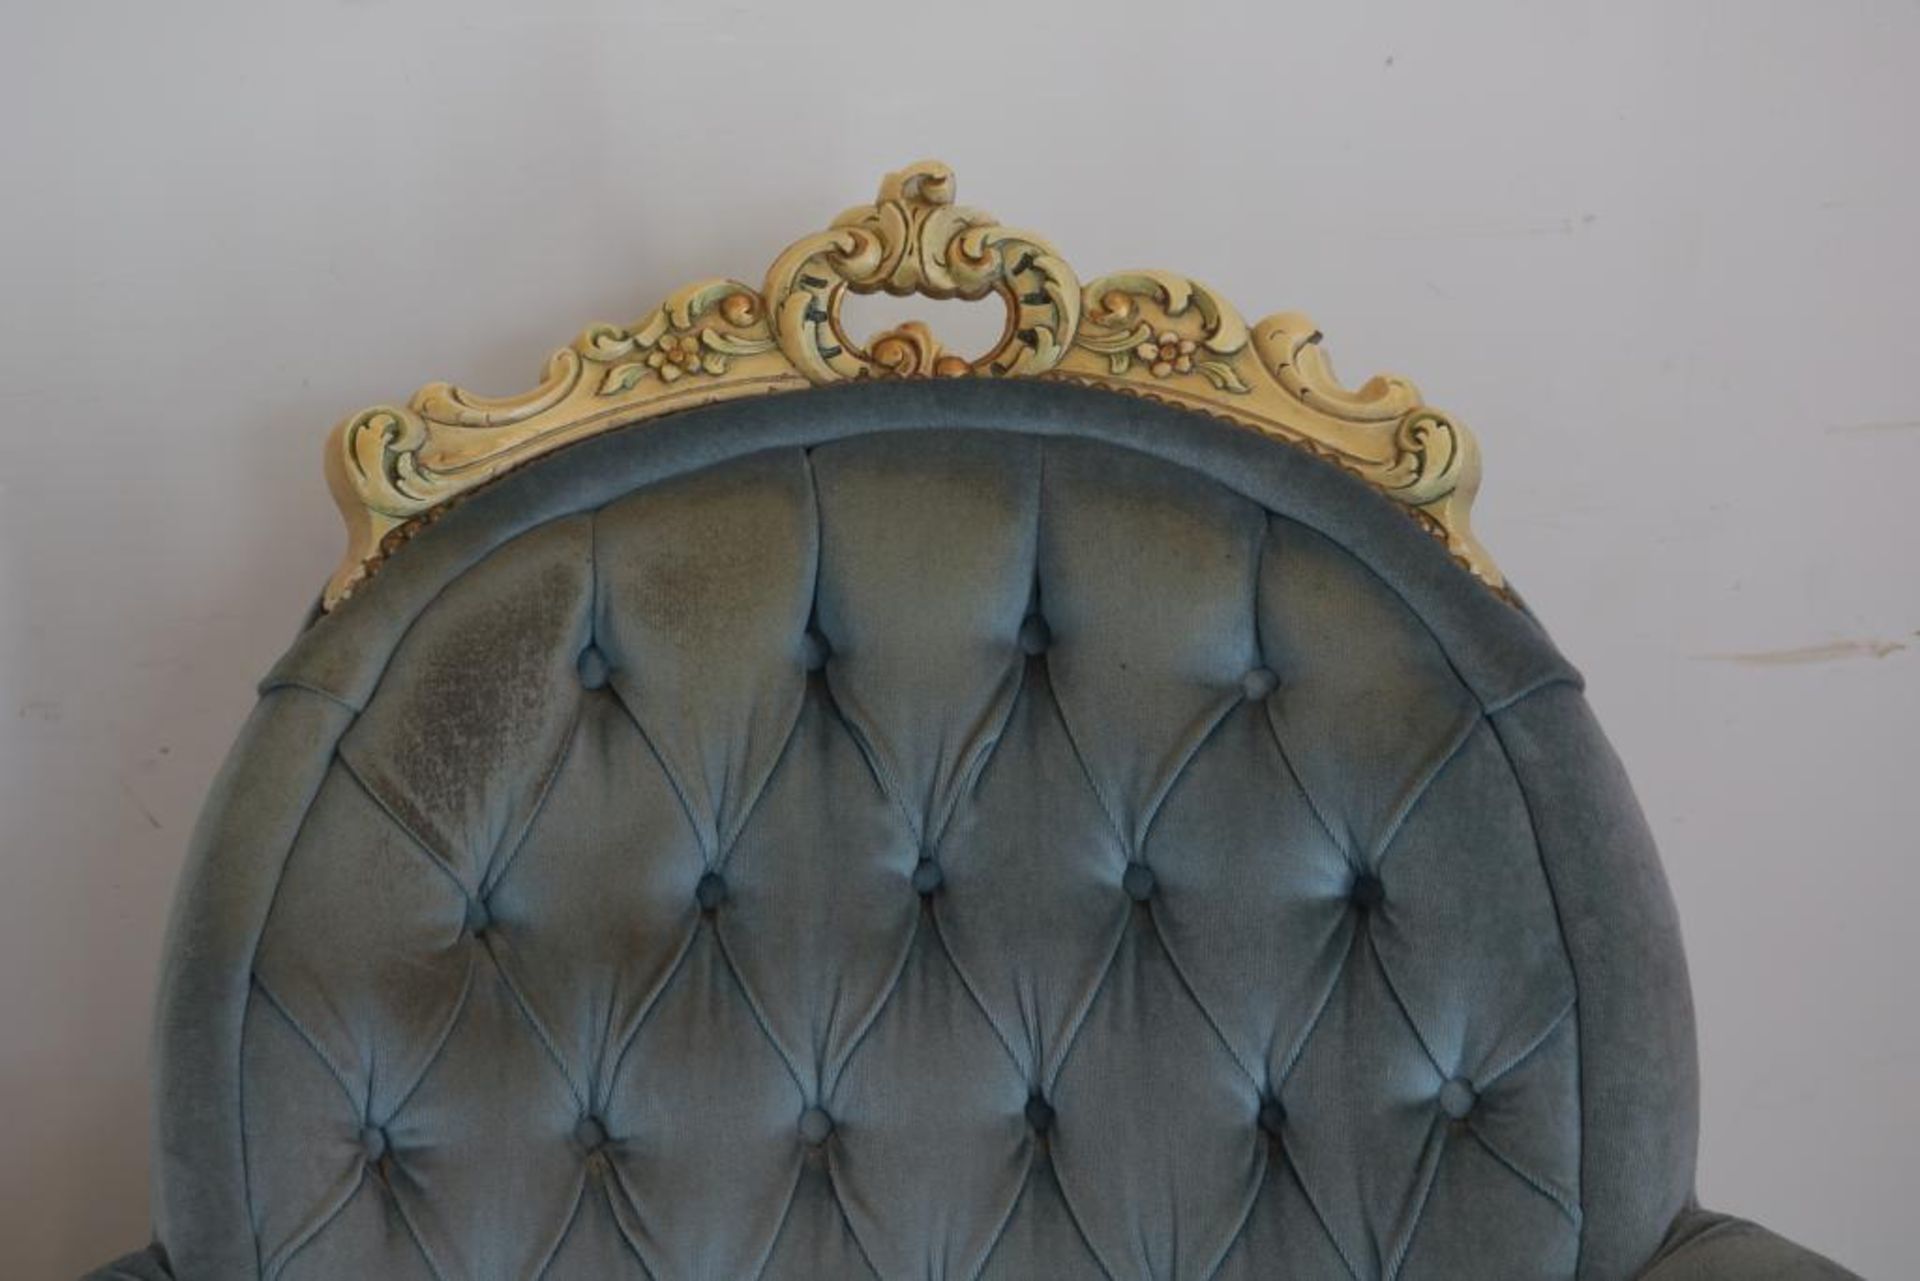 Stel Louis XV-stijl fauteuils - Bild 2 aus 5